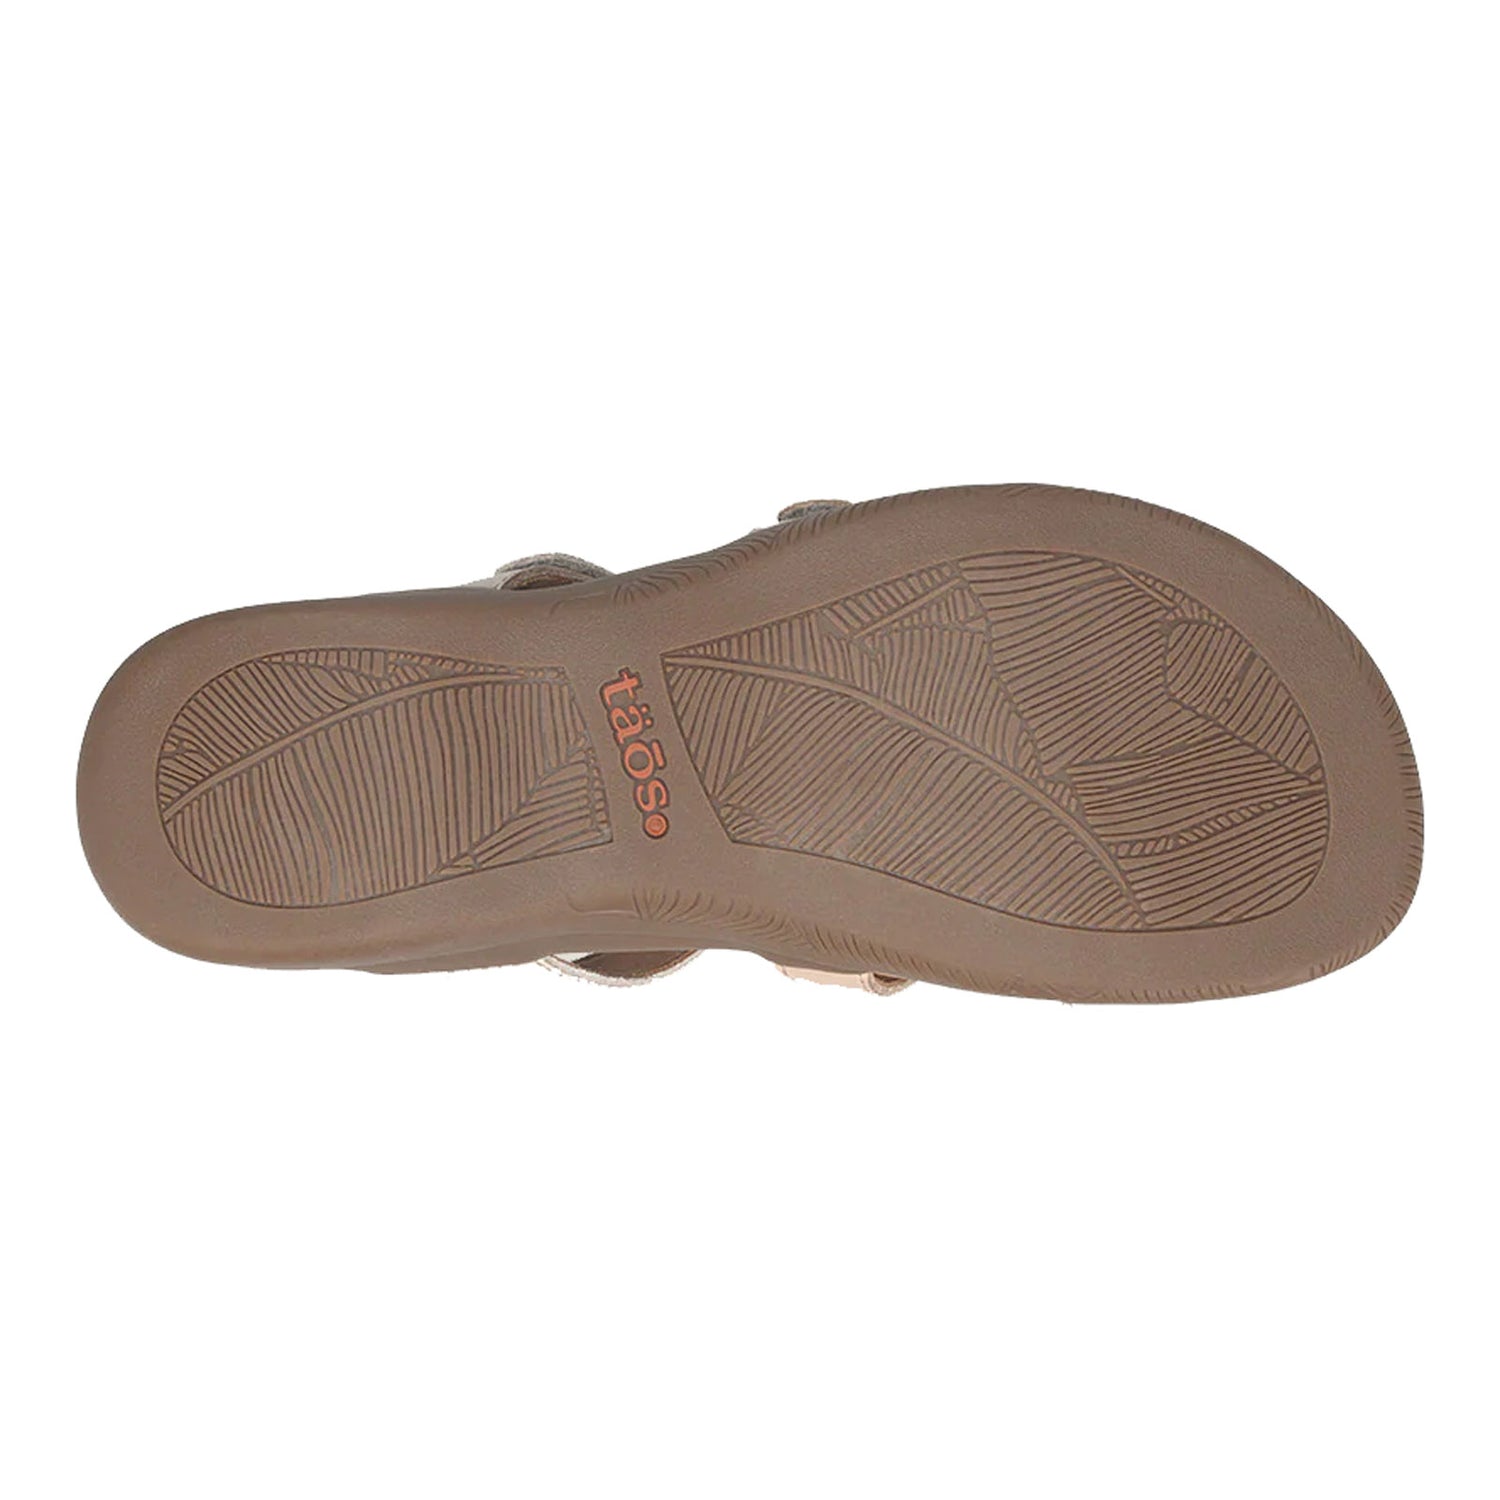 Peltz Shoes  Women's Taos Prize 4 Sandal Stone Multi PZ4-14021-STNM